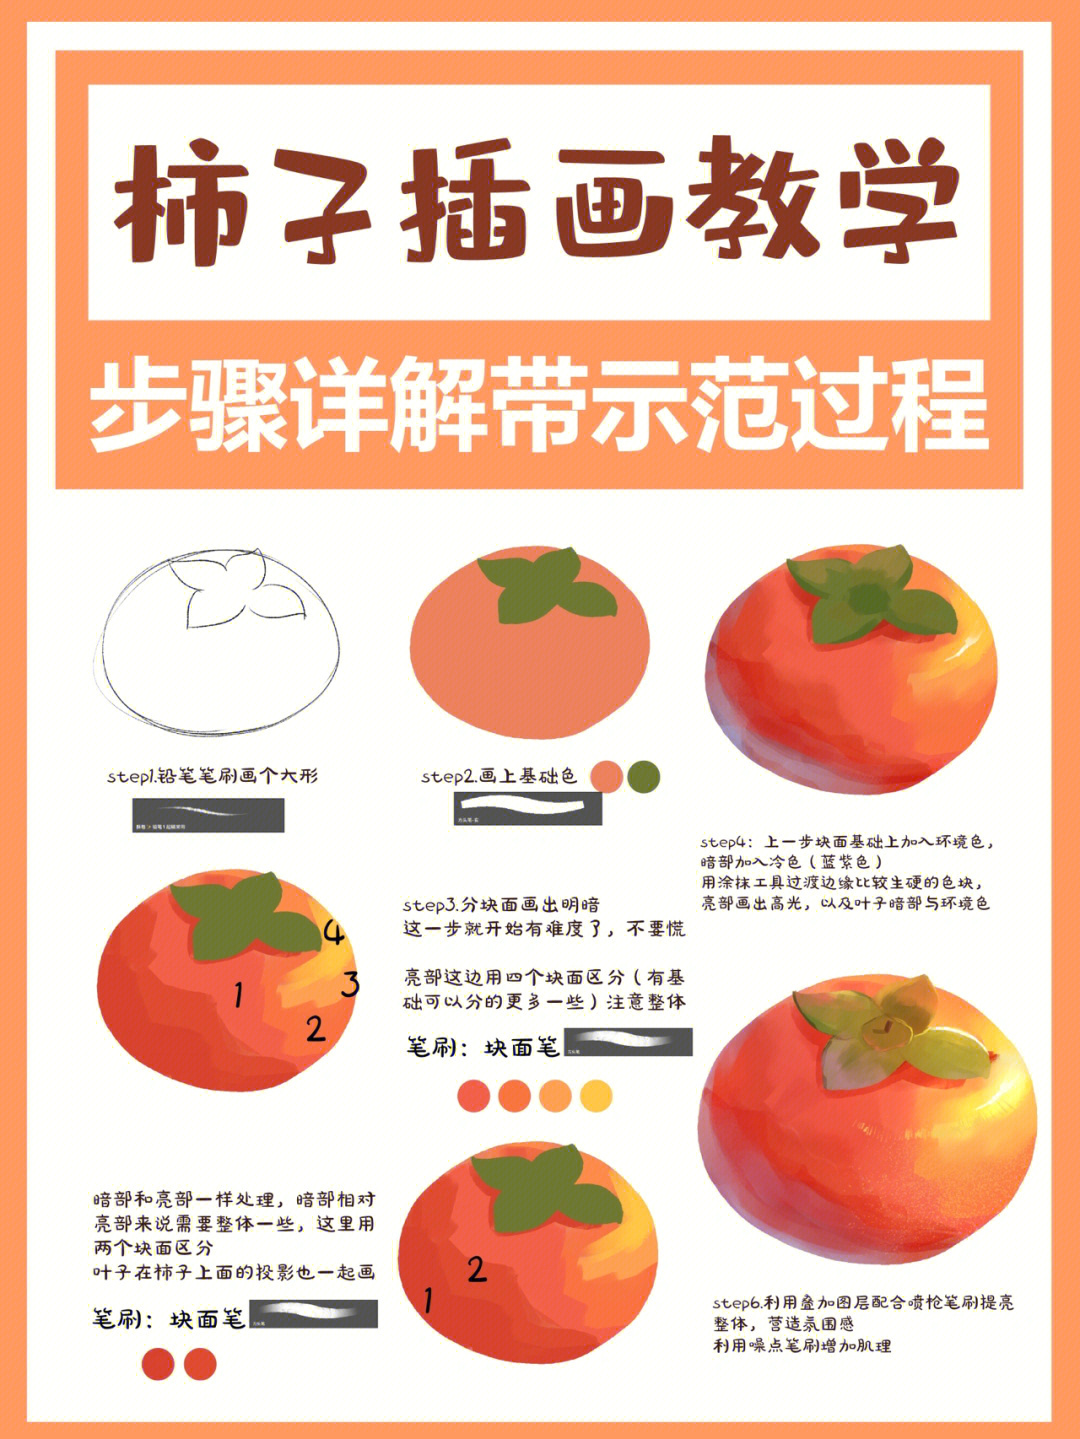 柿子结构图及名称图片